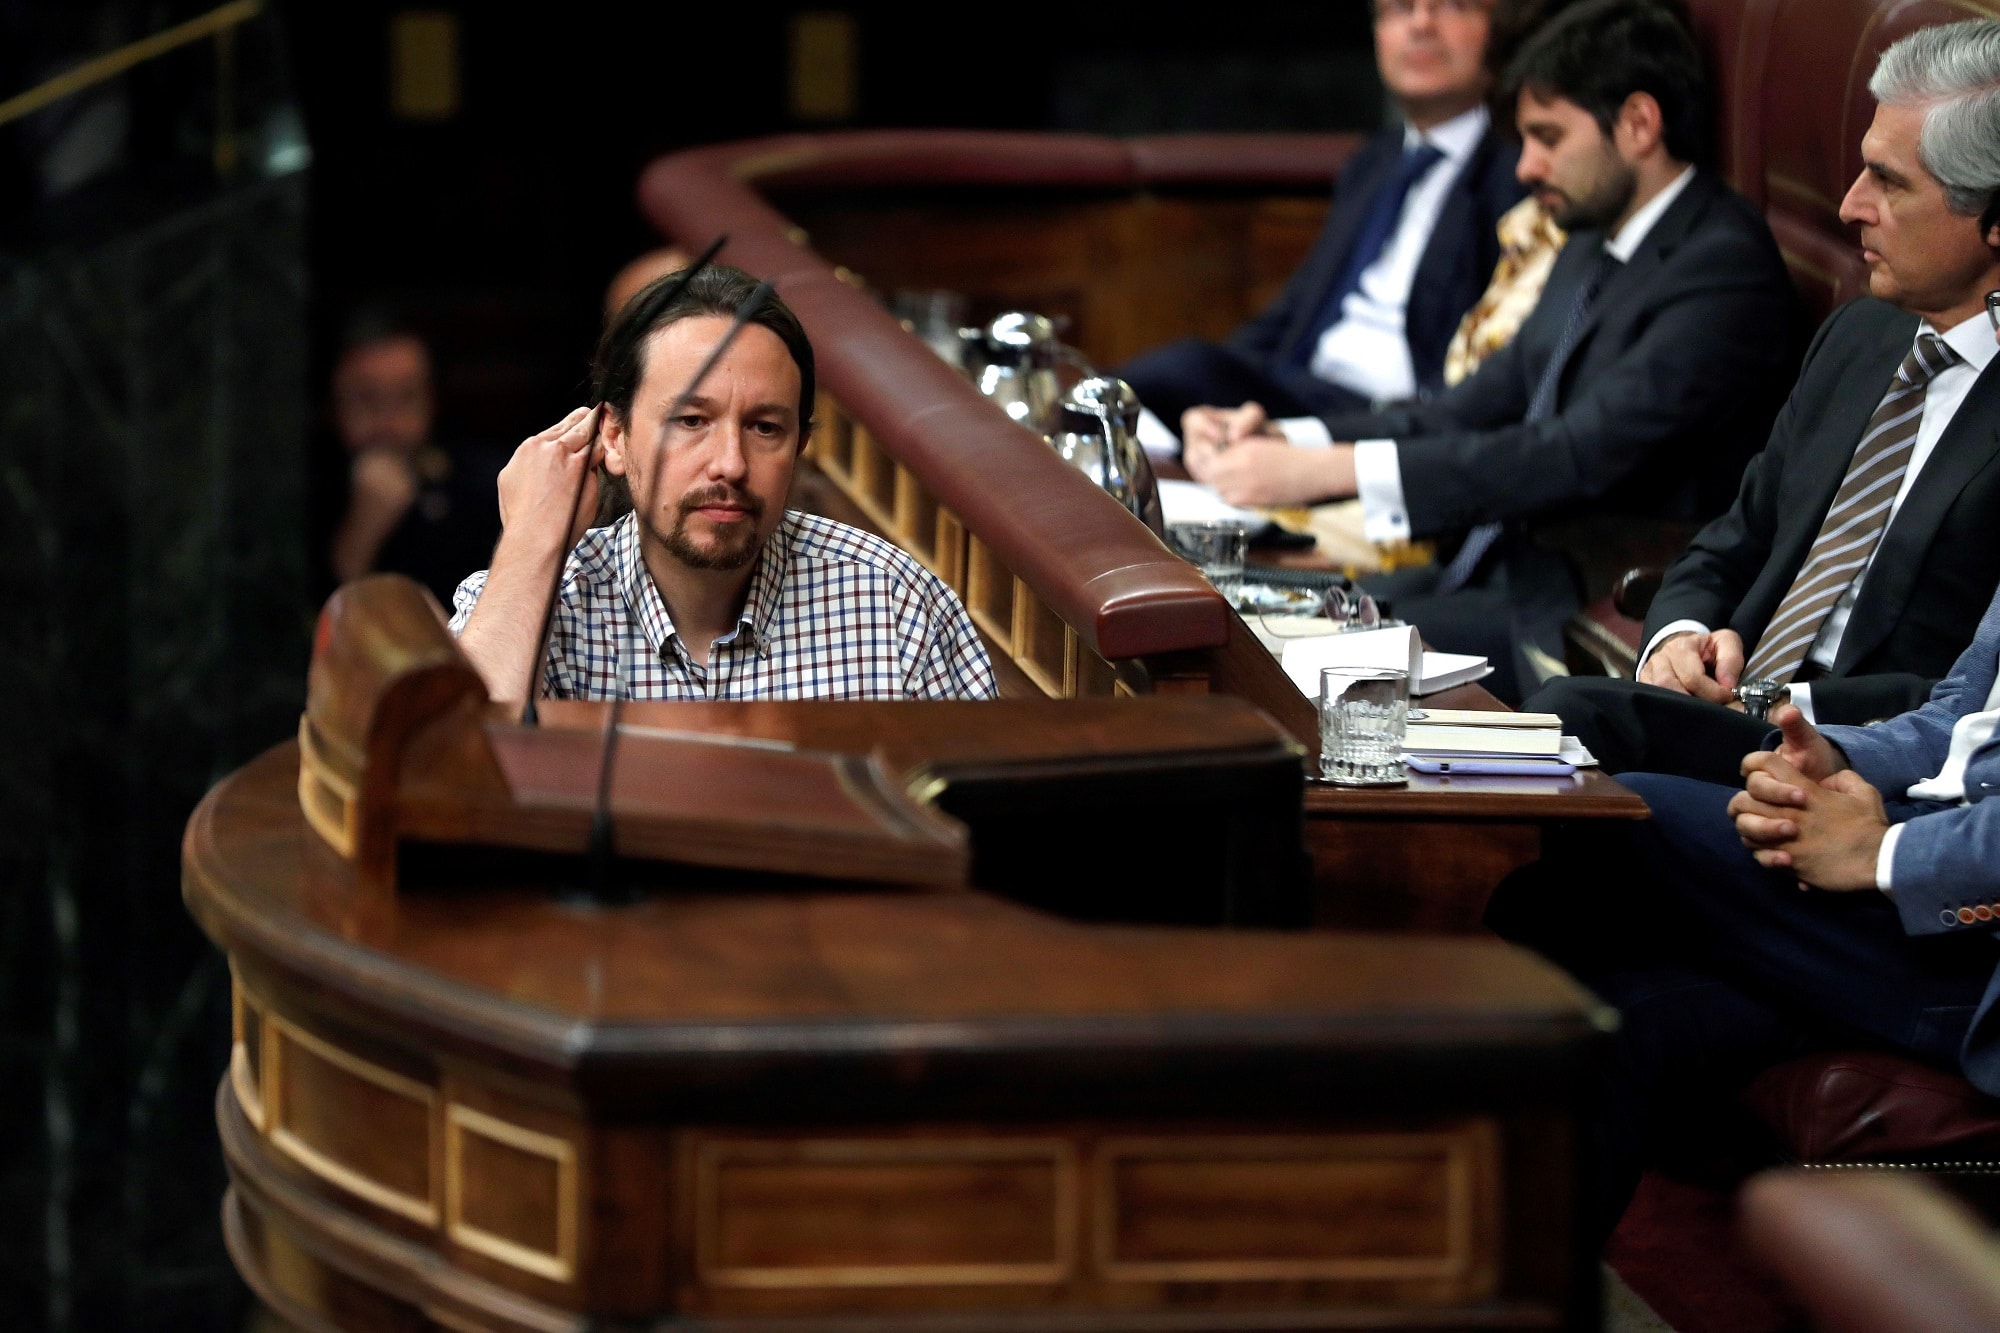 El líder de Unidas Podemos, Pablo Iglesias, se dirige a la tribuna para intervenir durante la tercera jornada del debate de investidura en el Congreso./Emilio Naranjo (Efe)